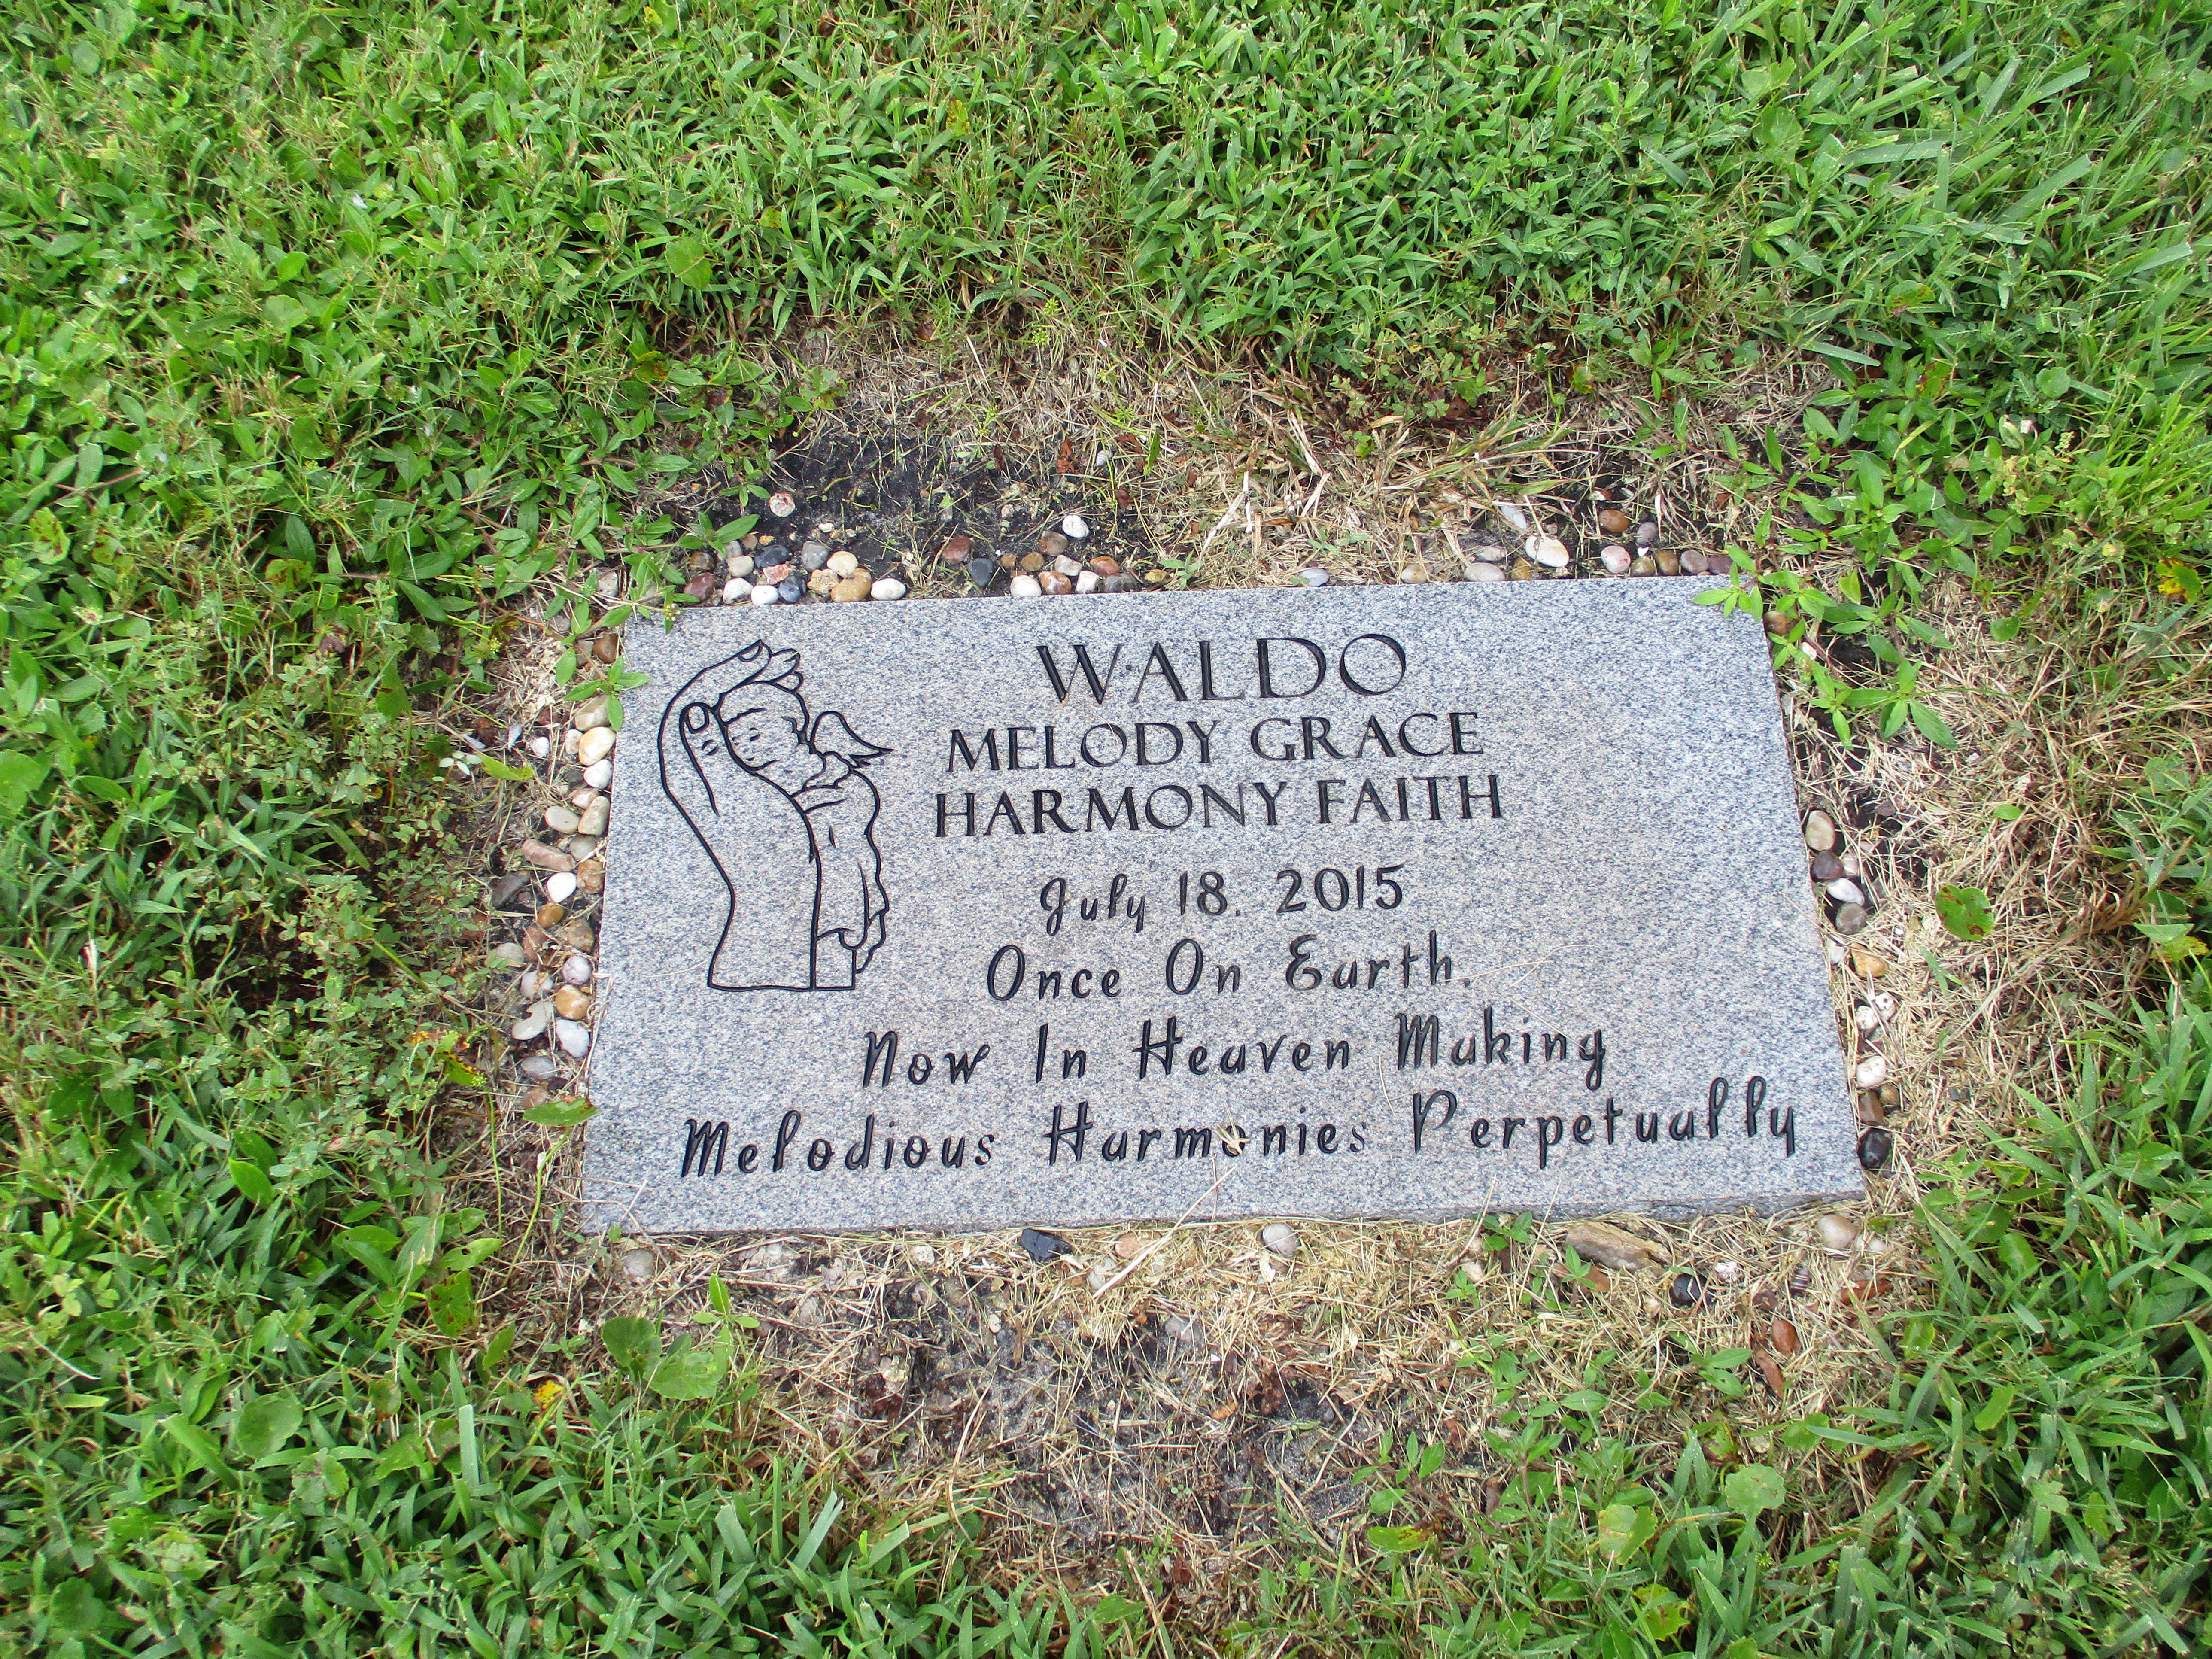 Melody Grace Harmony Faith Waldo